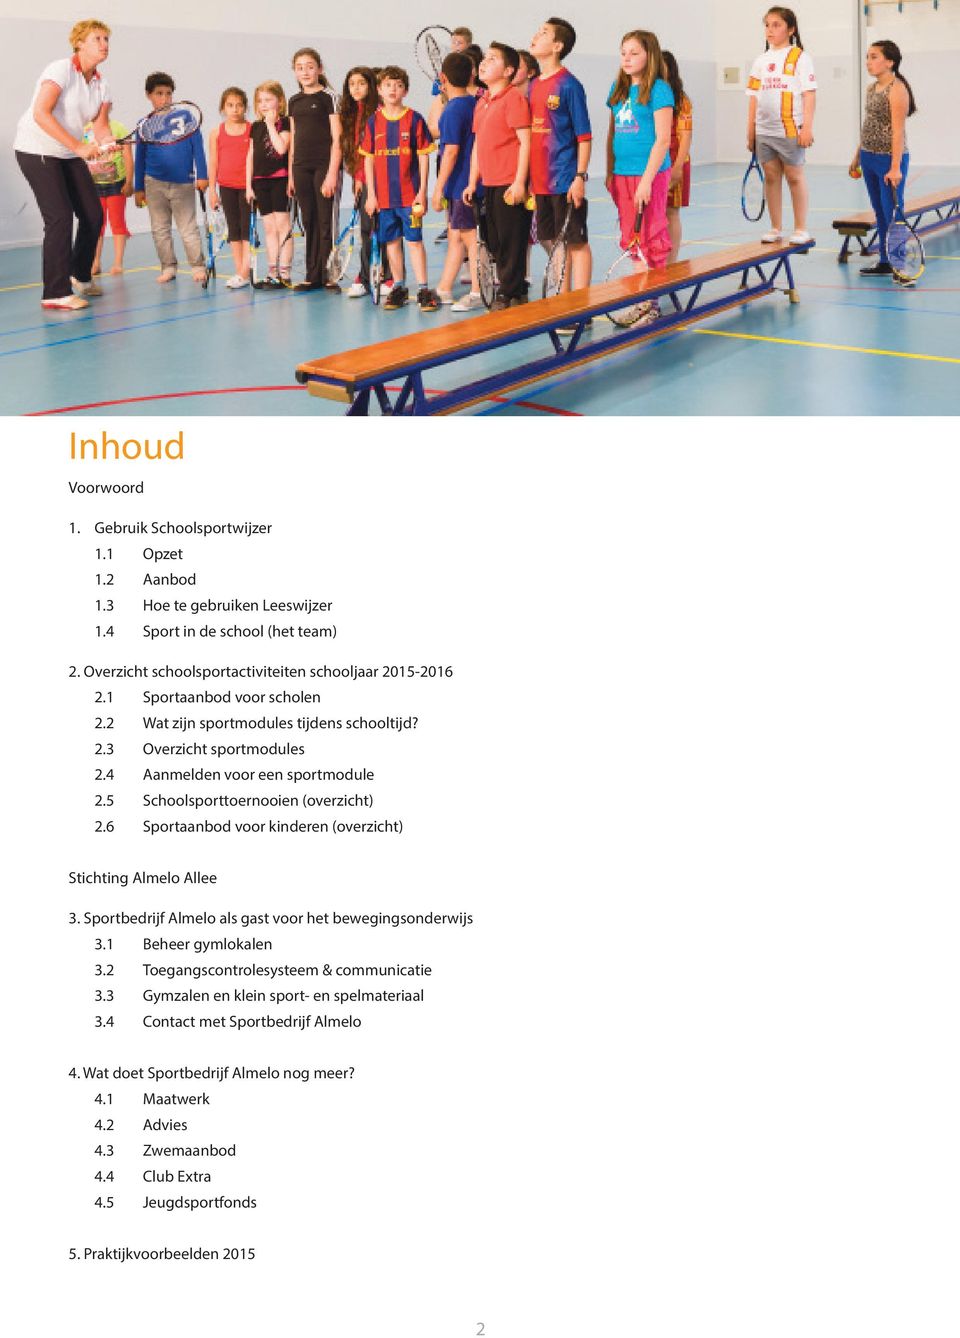 6 Sportaanbod voor kinderen (overzicht) Stichting Almelo Allee 3. Sportbedrijf Almelo als gast voor het bewegingsonderwijs 3.1 Beheer gymlokalen 3.2 Toegangscontrolesysteem & communicatie 3.